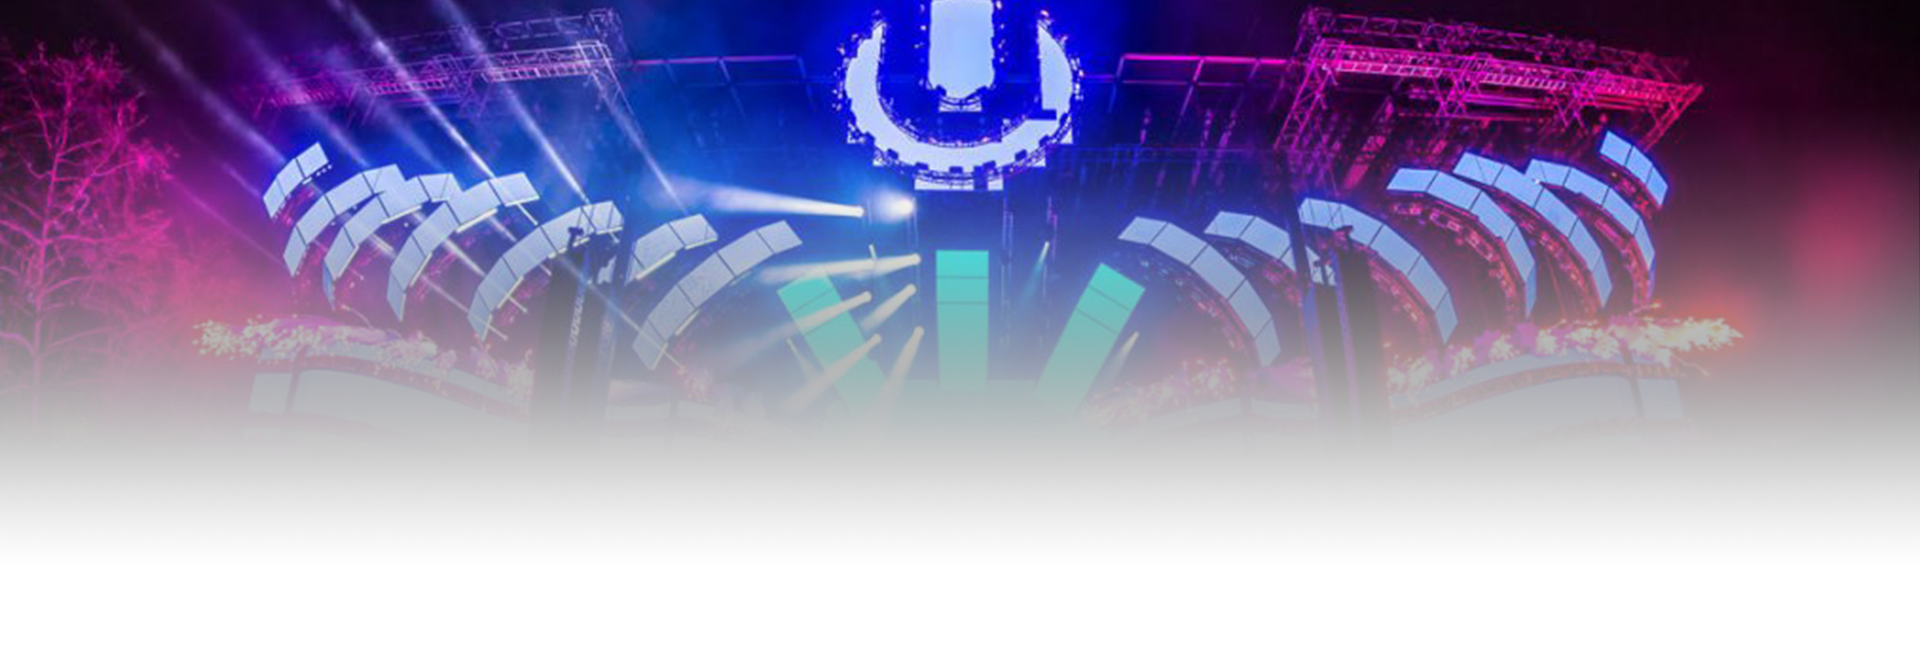 Ultra Music Festival 2017